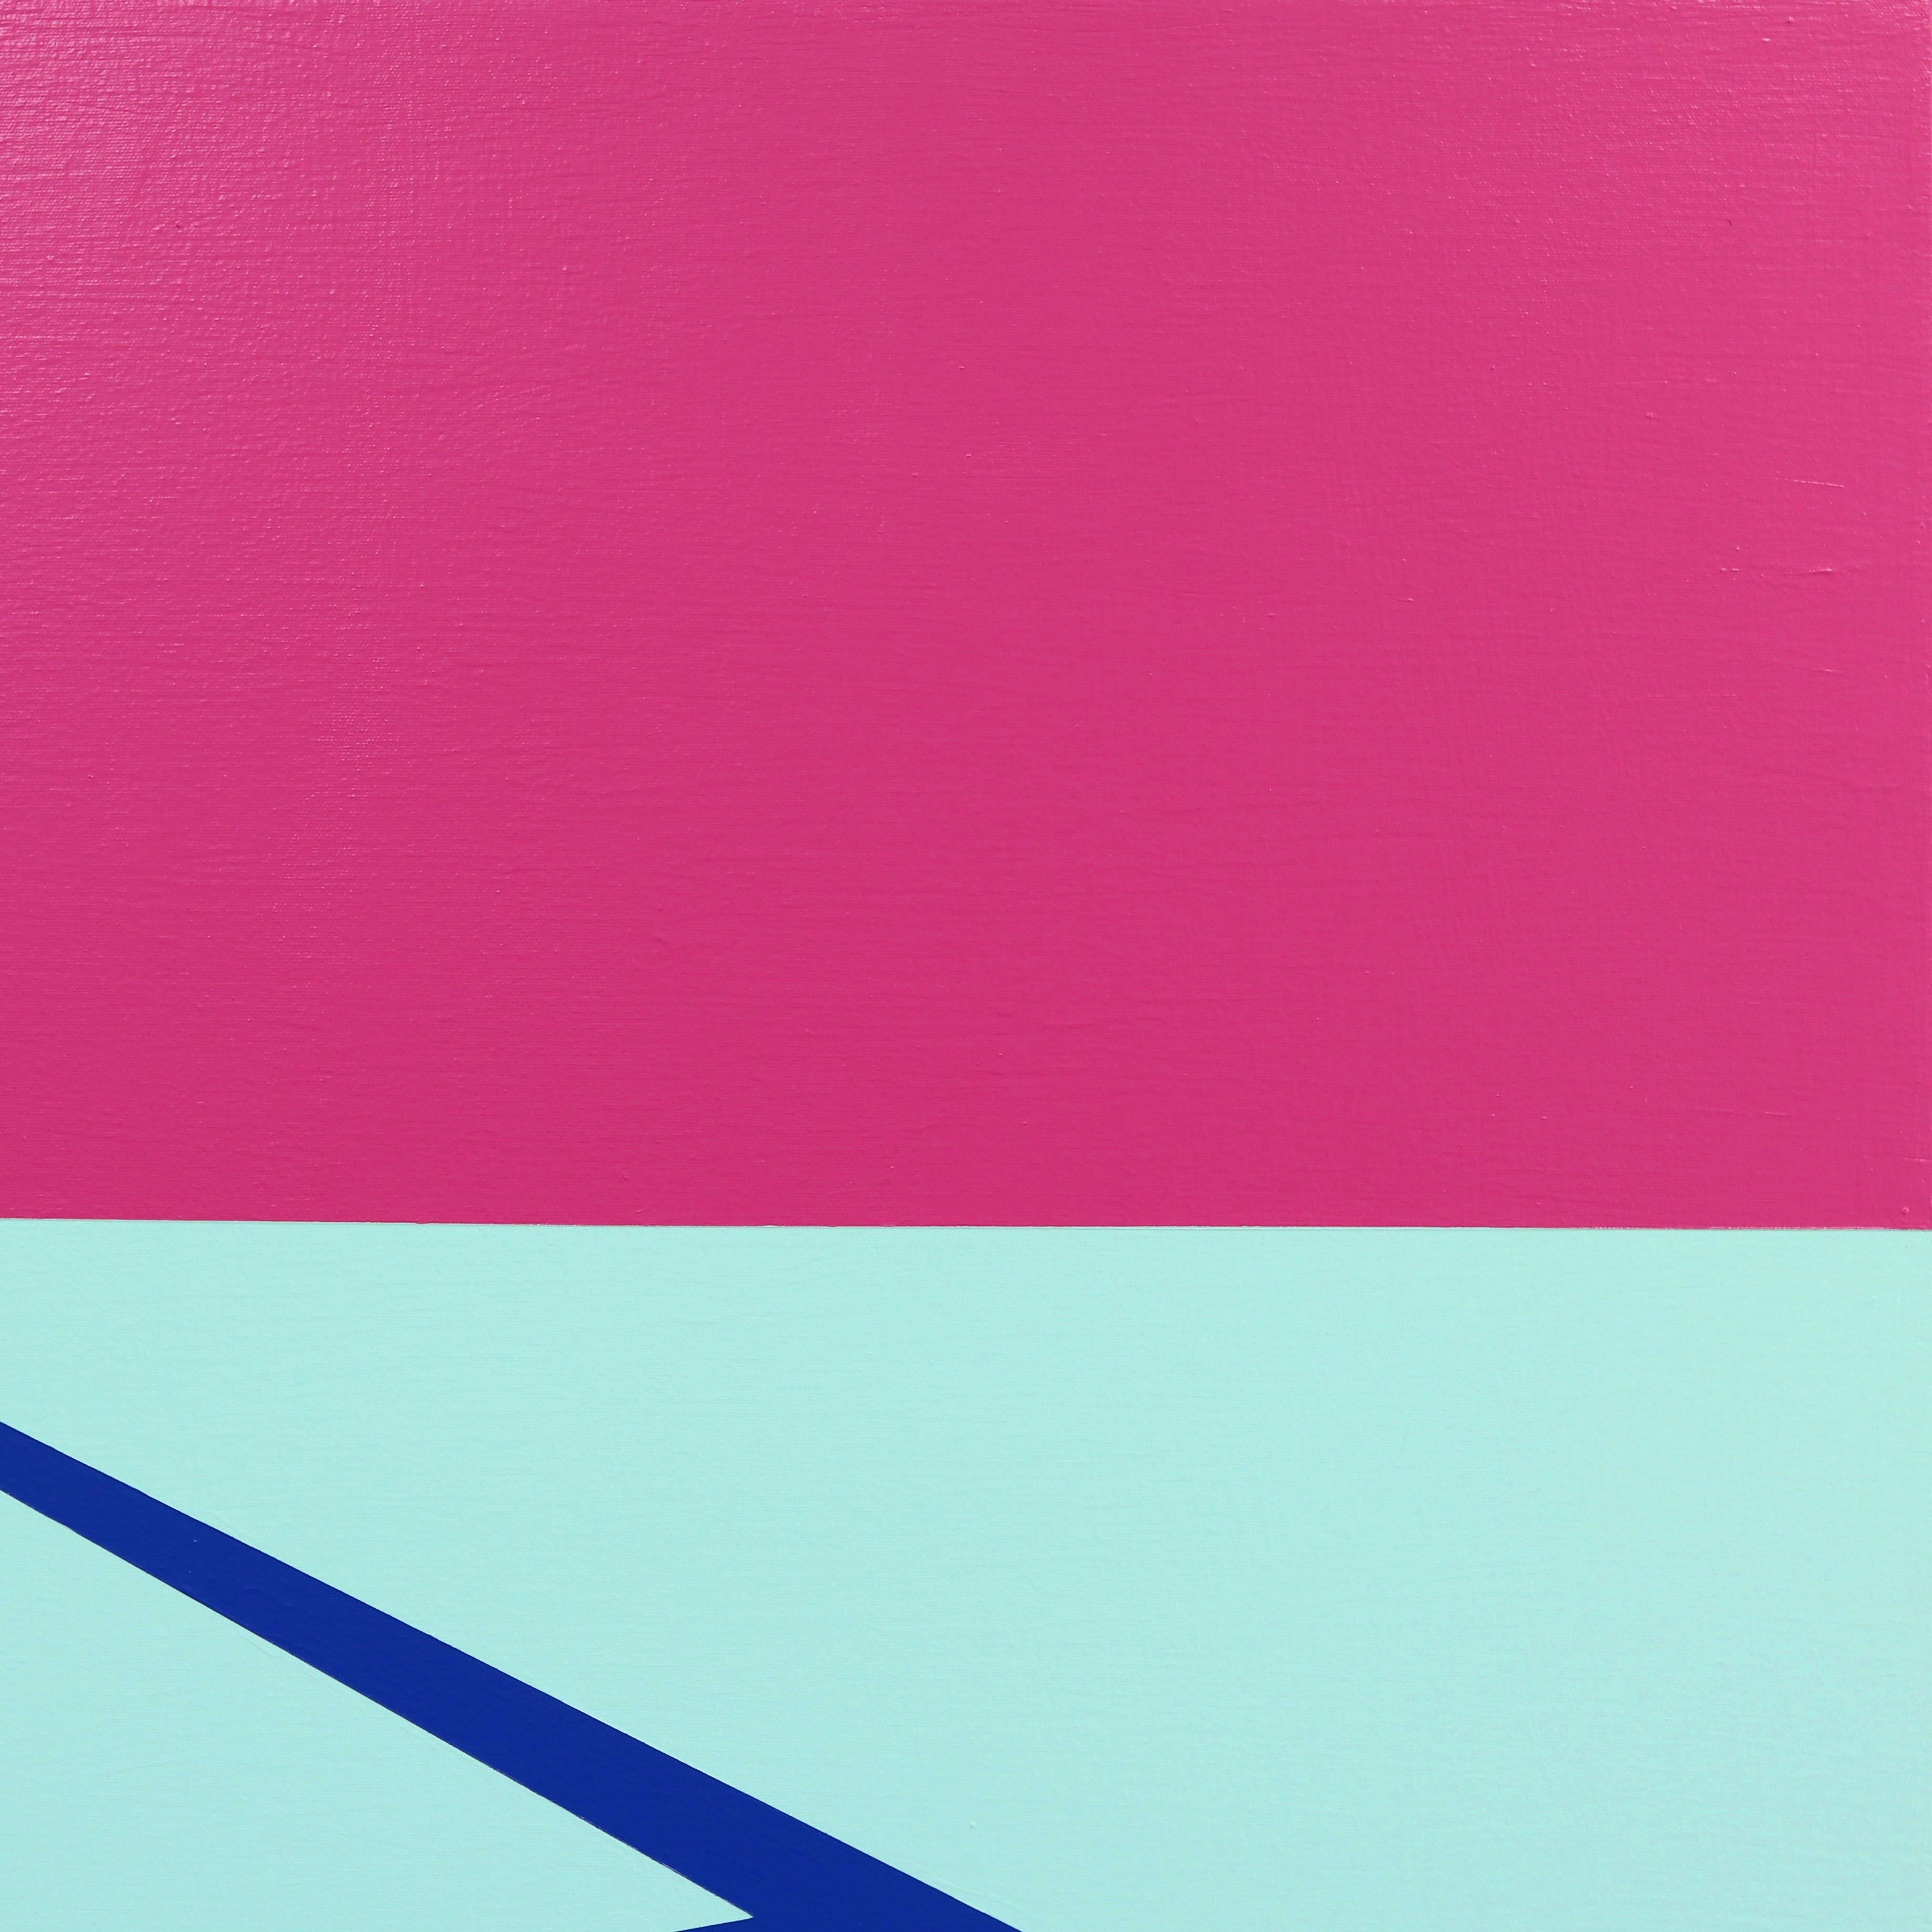 Les peintures contemporaines-minimalistes de Will Beger adoptent une approche tout à fait unique de l'art AM Contemporary. Influencé par sa jeunesse et inspiré par la Nature, il capture sans effort une esthétique vibrante et bohème qui est sans